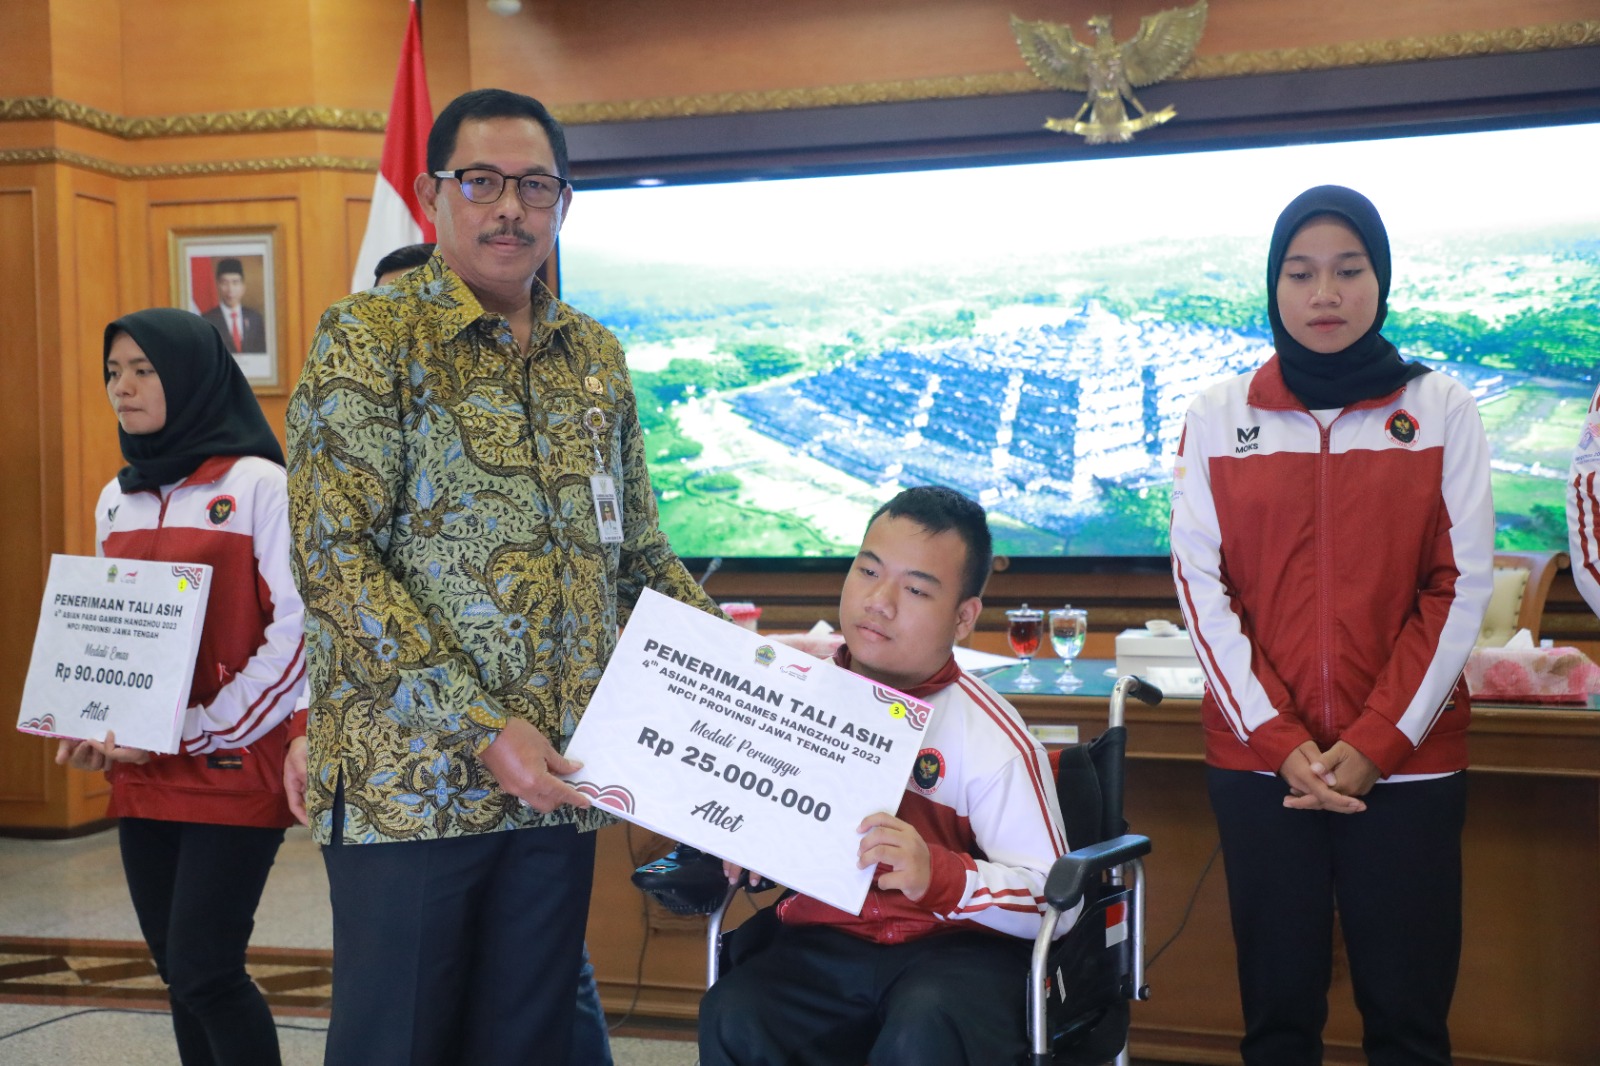 Sumbang 38 Medali, Pj Gubernur Jateng Beri Tali Asih Untuk Atlet dan Pelatih Paragames